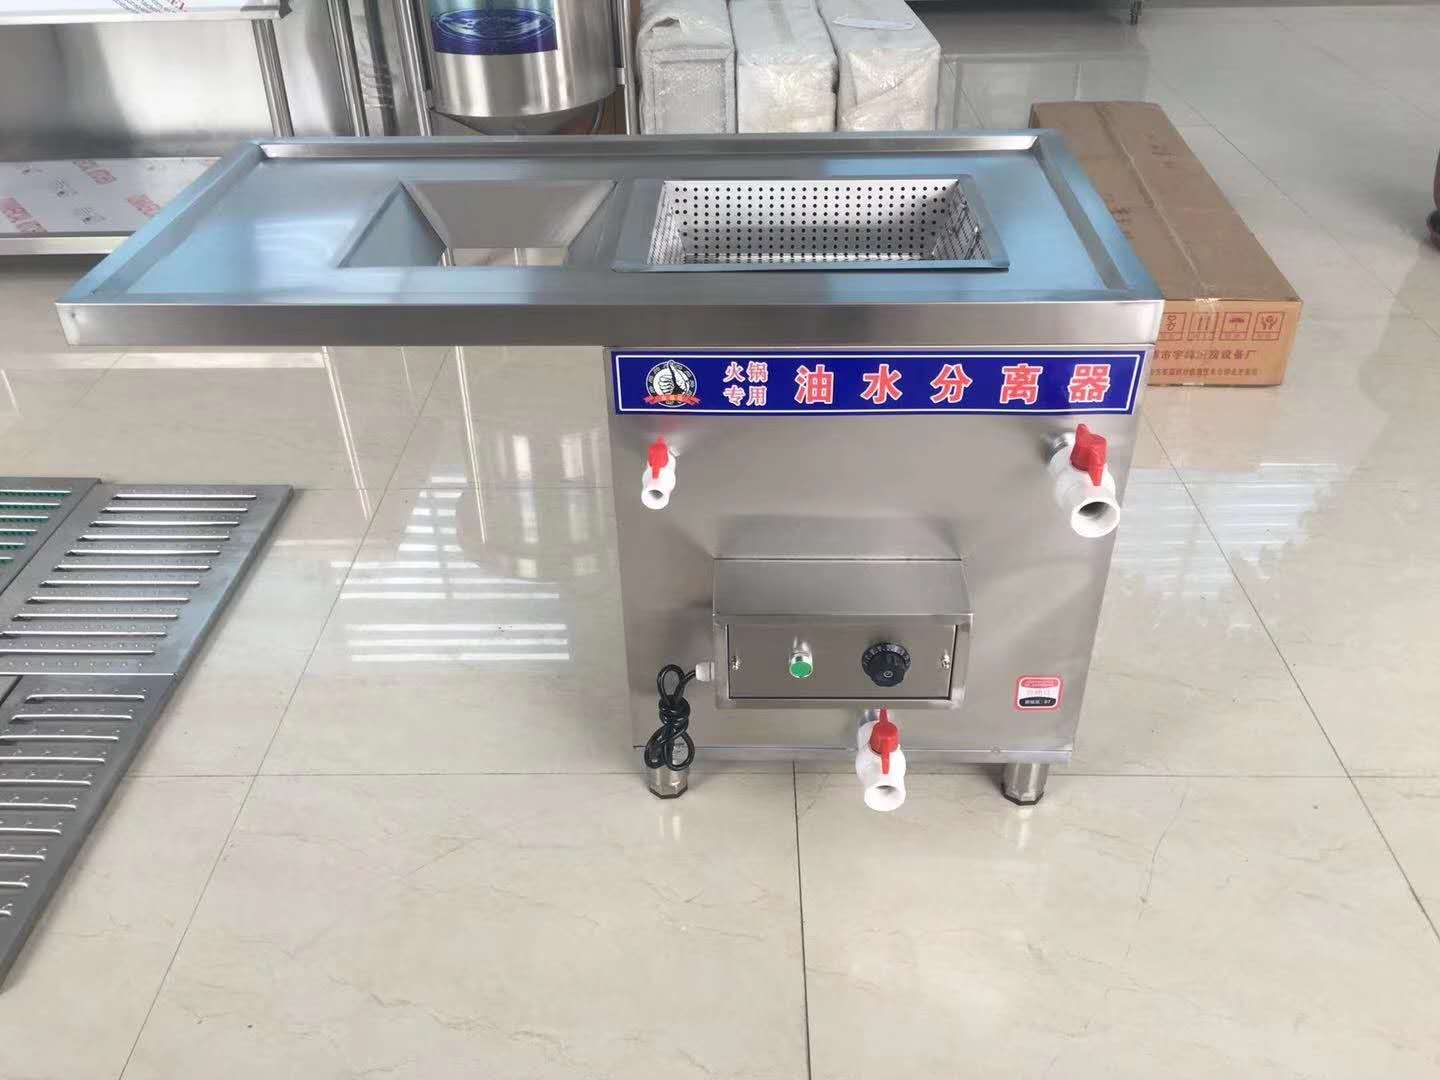 上海油水分离器厂家、 火锅店专用新型油水分离器、上海市食品安全网公示